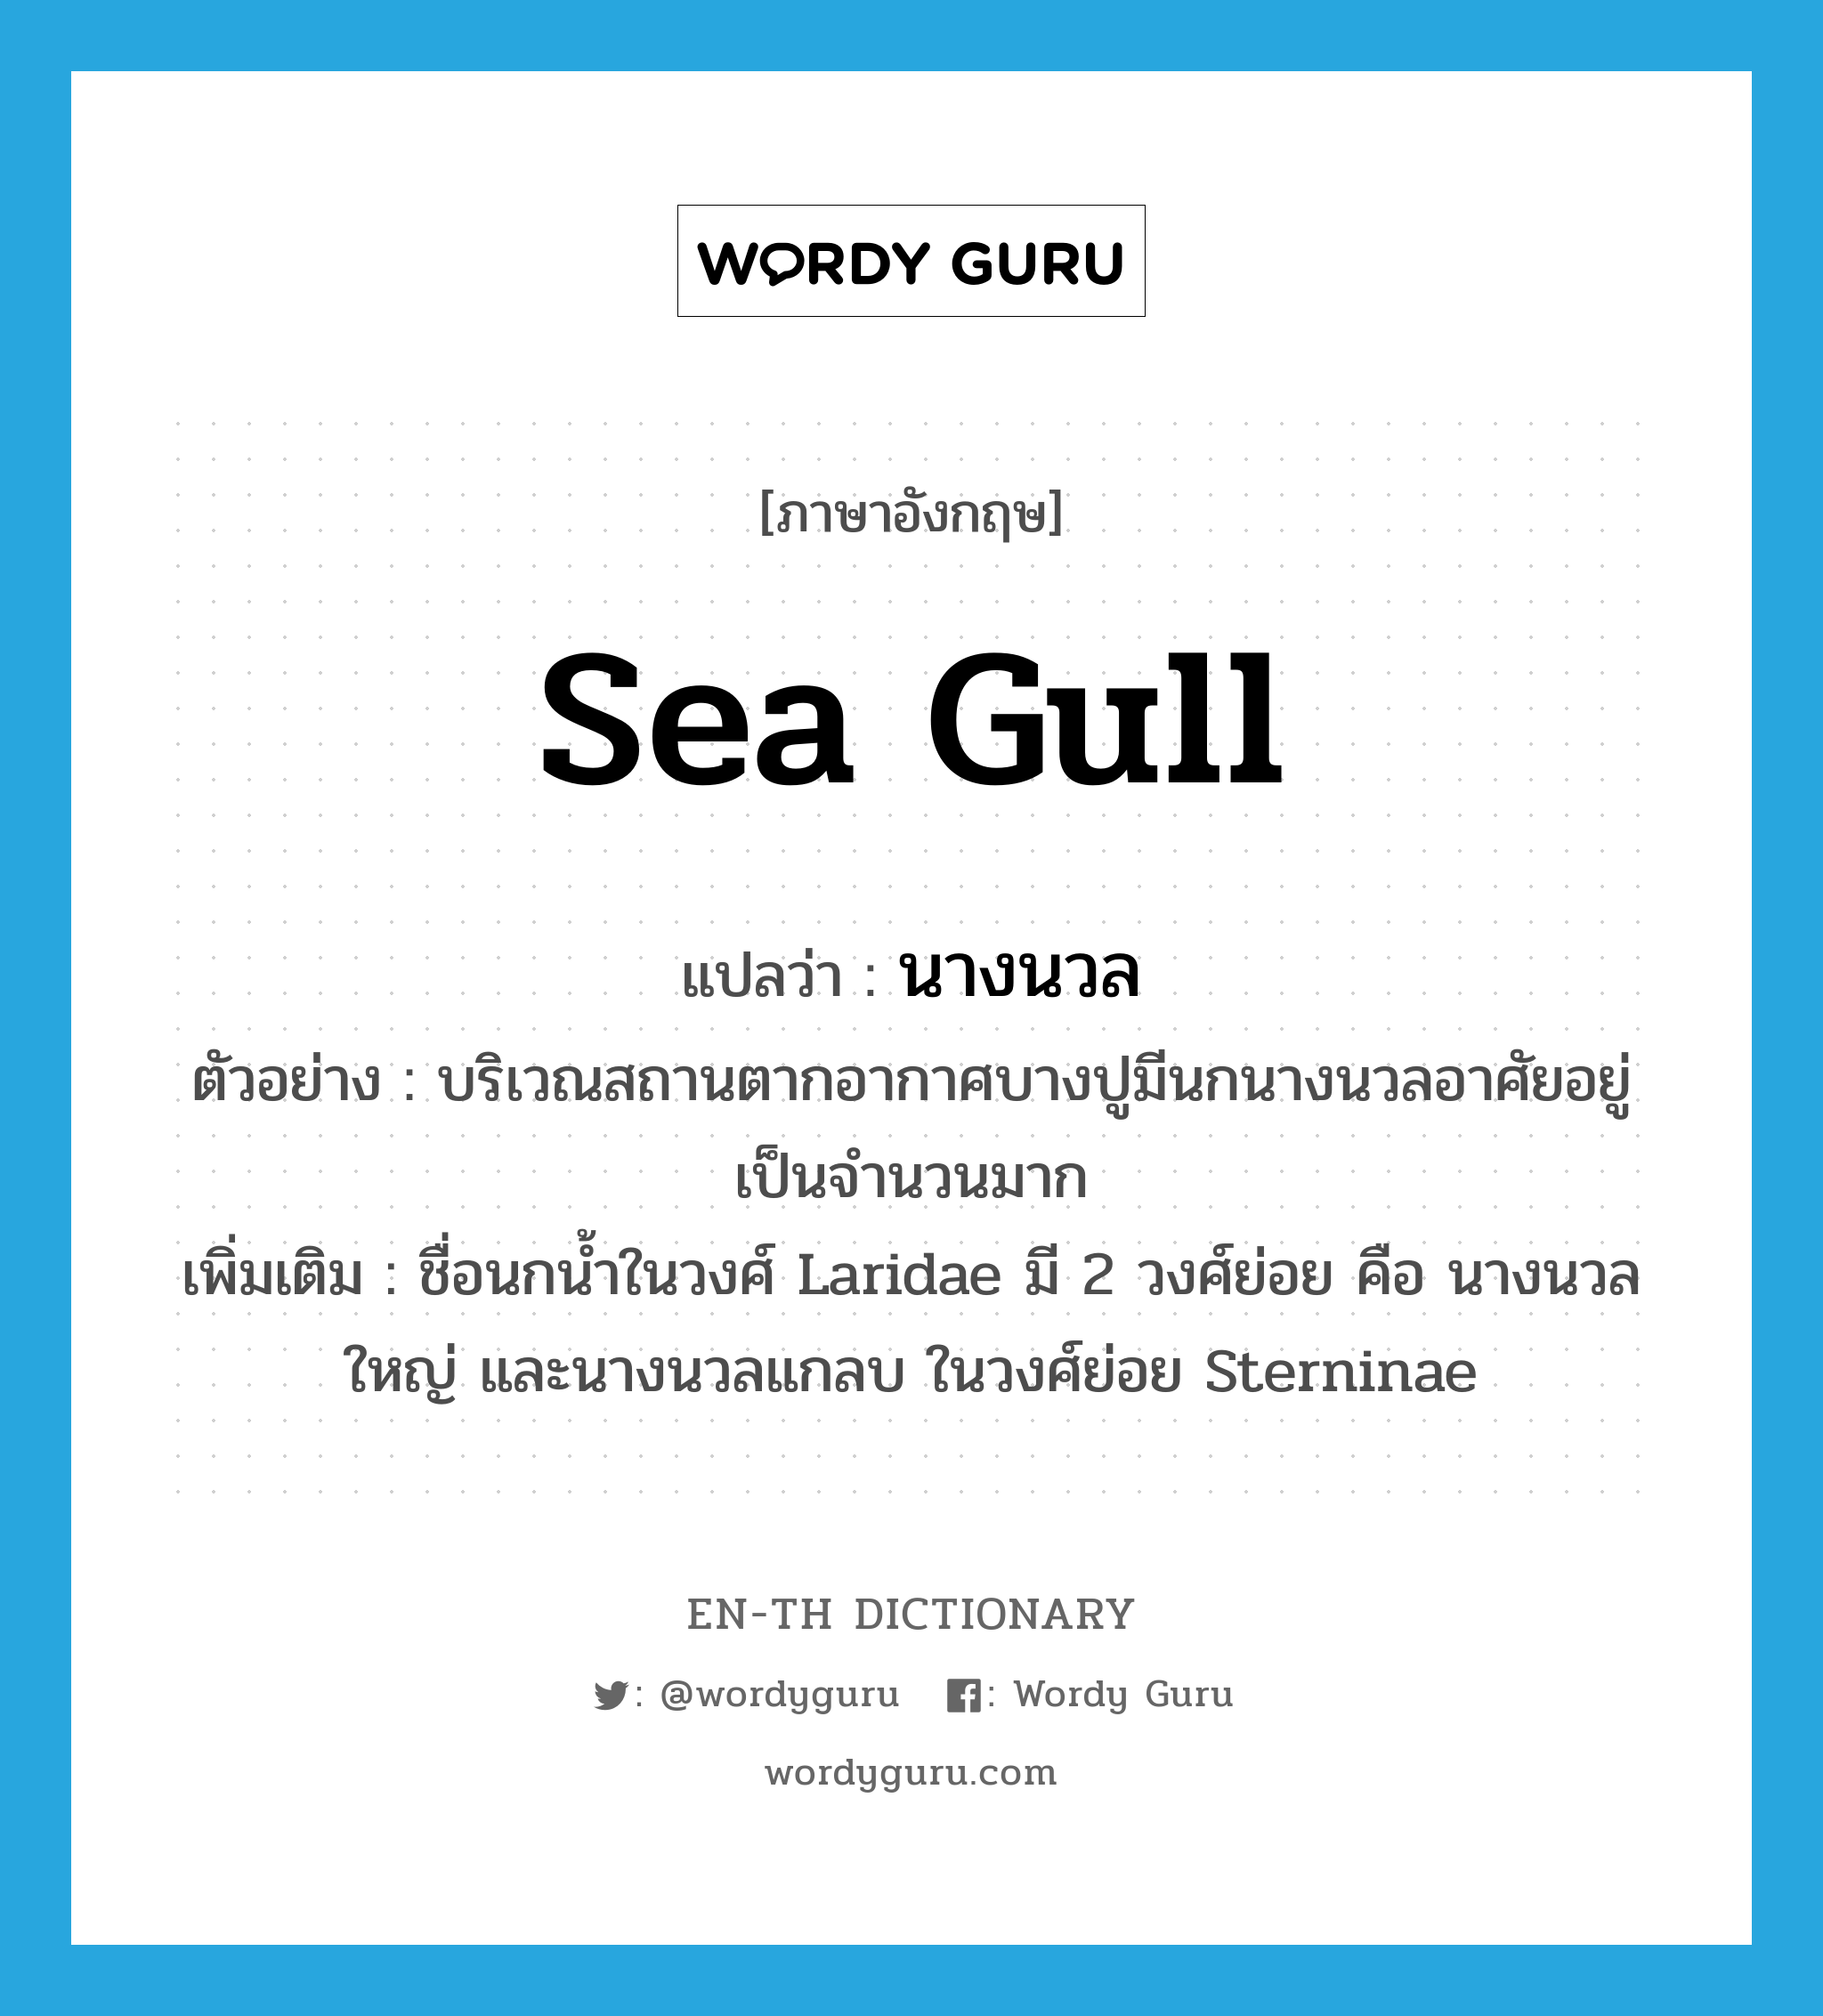 sea gull แปลว่า?, คำศัพท์ภาษาอังกฤษ sea gull แปลว่า นางนวล ประเภท N ตัวอย่าง บริเวณสถานตากอากาศบางปูมีนกนางนวลอาศัยอยู่เป็นจำนวนมาก เพิ่มเติม ชื่อนกน้ำในวงศ์ Laridae มี 2 วงศ์ย่อย คือ นางนวลใหญ่ และนางนวลแกลบ ในวงศ์ย่อย Sterninae หมวด N